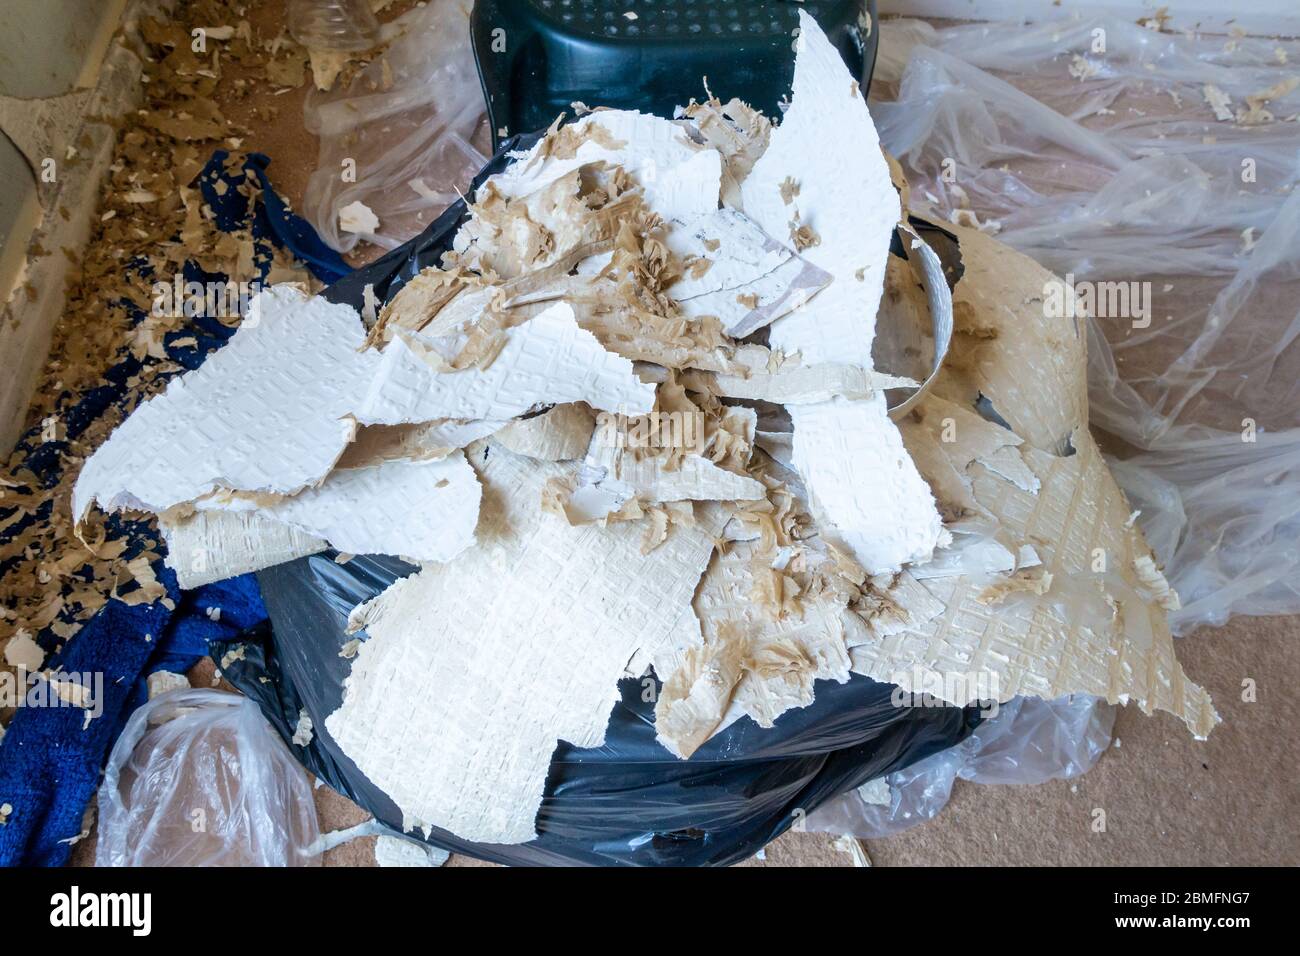 Papier peint retiré des murs farci dans un sac poubelle dans le cadre de l'enlèvement du papier peint pour redécorer. Banque D'Images